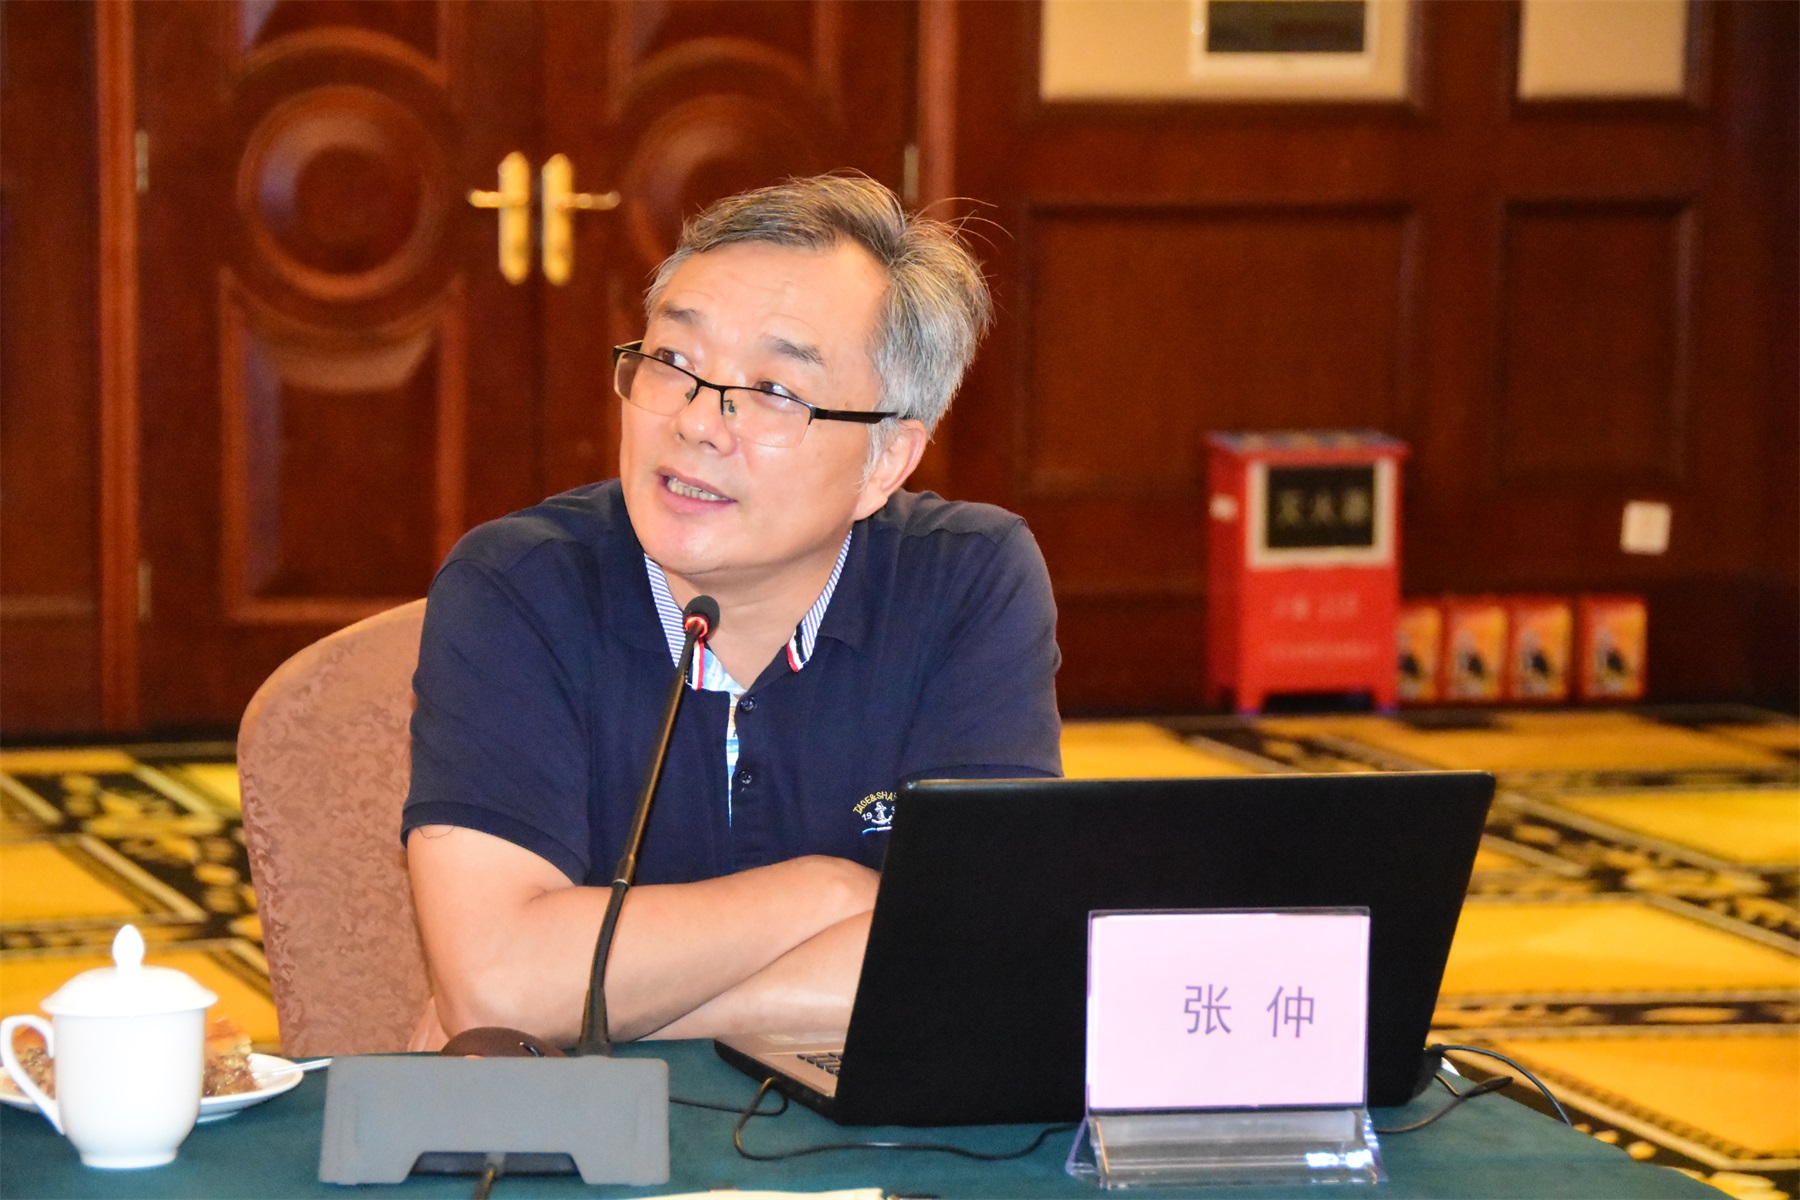 副教授张榕欣发言张榕欣 希望本地企业加进与职业技术学院的合作